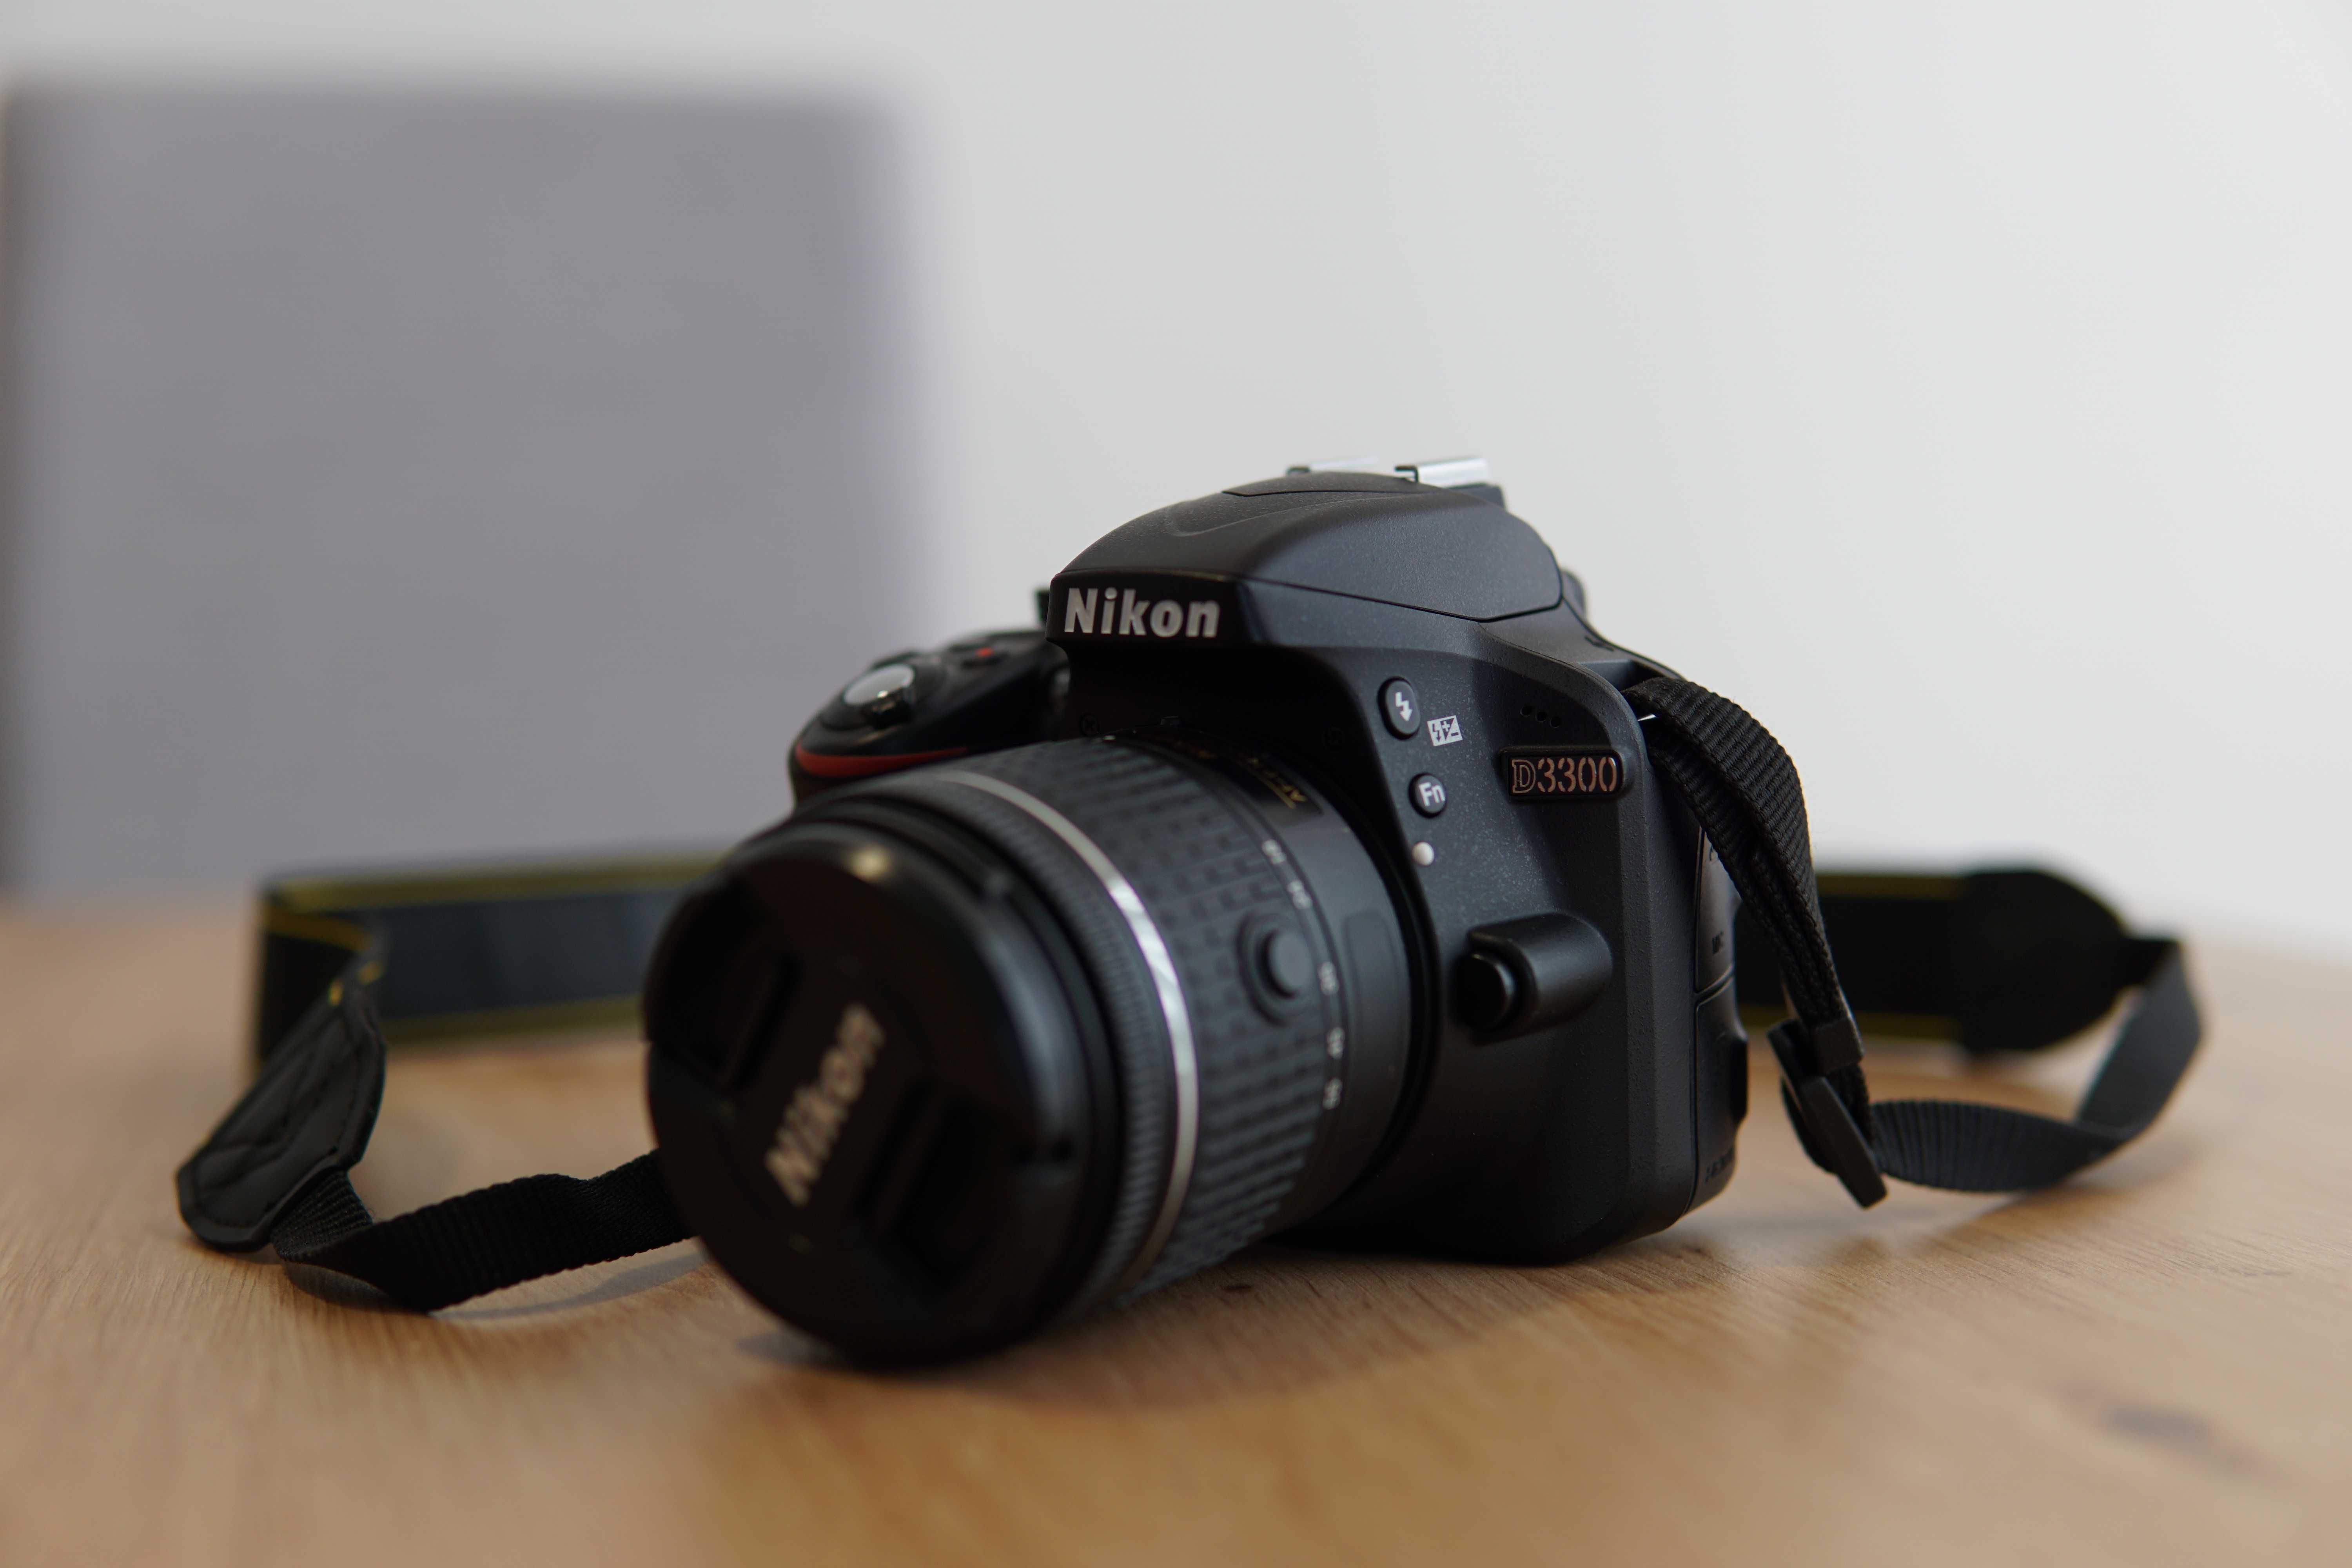 Nikon D3300 24.2M + 18-55mm f/3.5-5.6